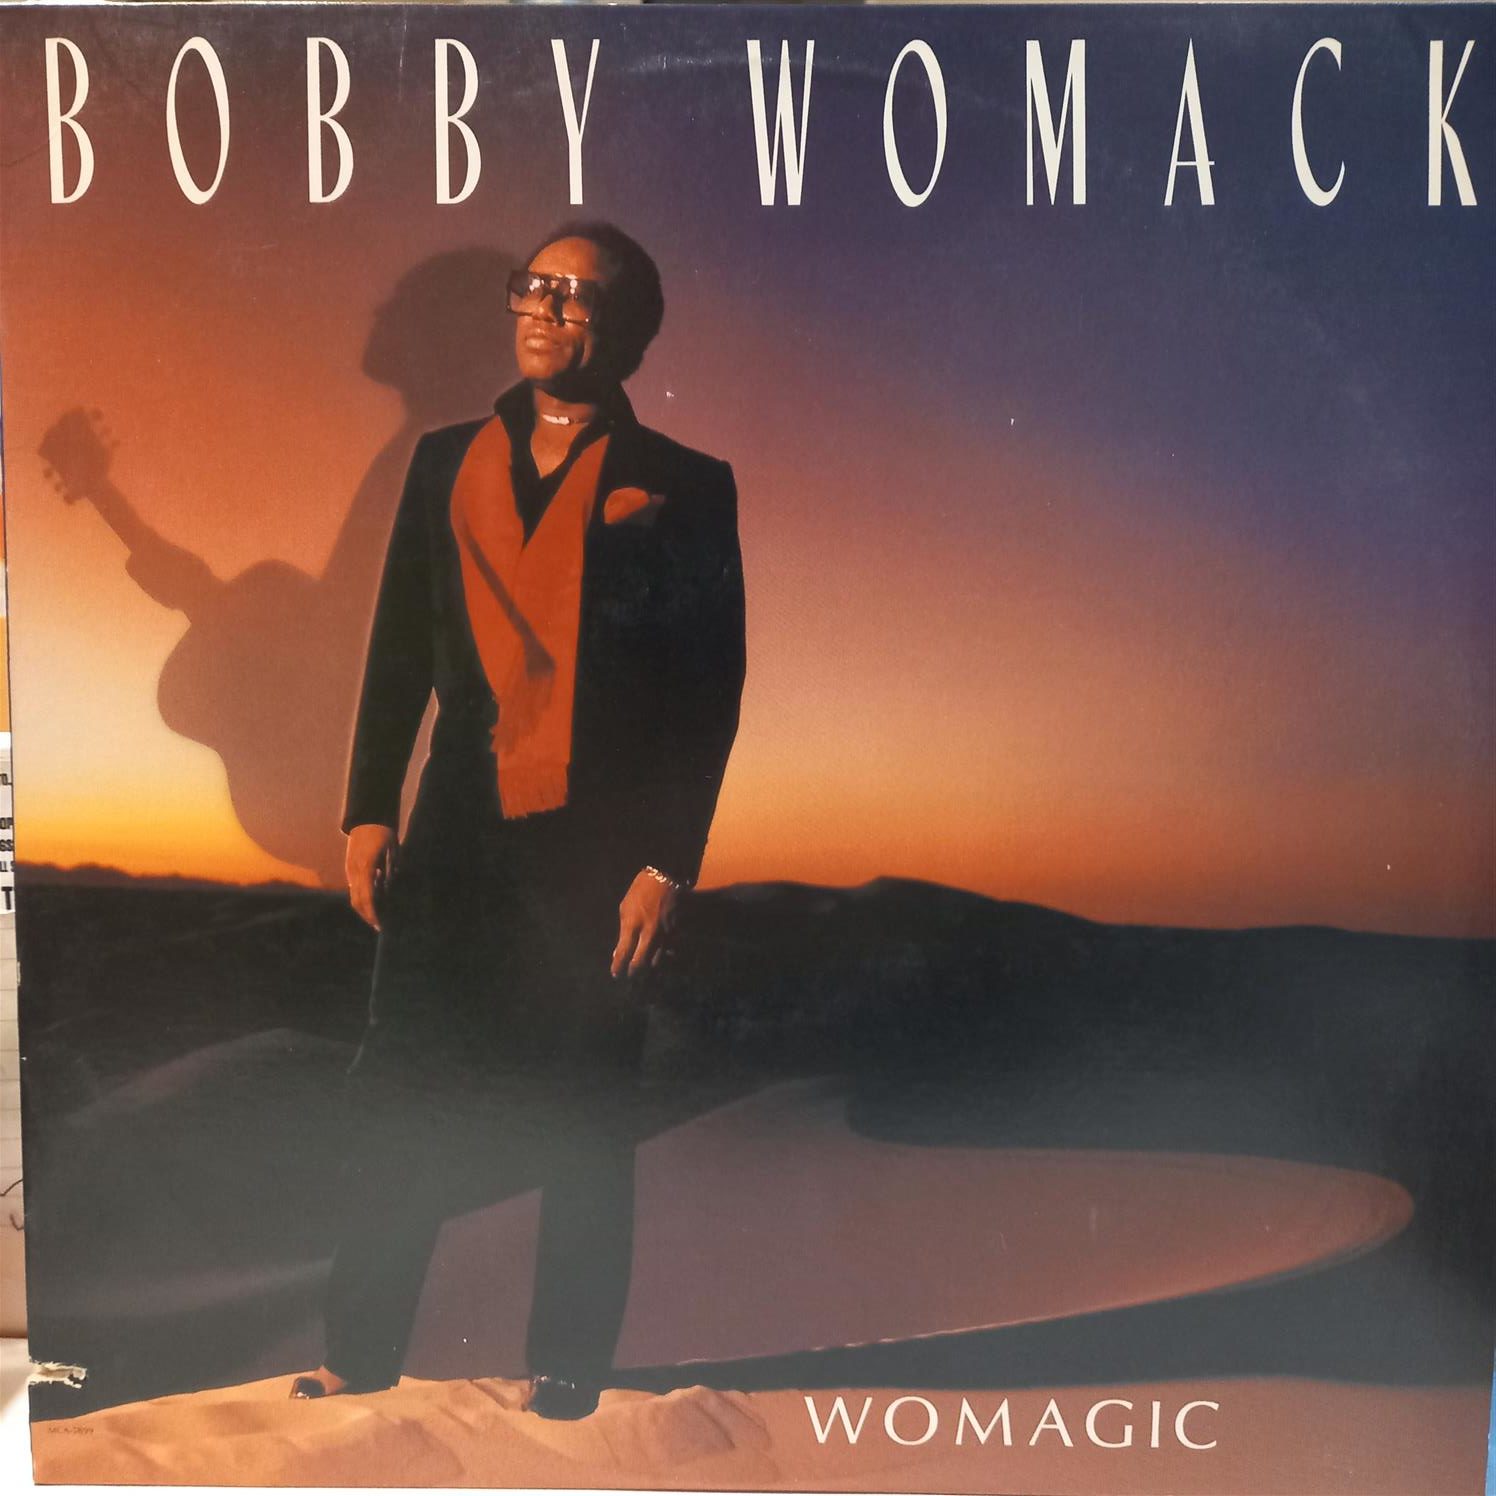 BOBBY WOMACK – WOMAGIC ON